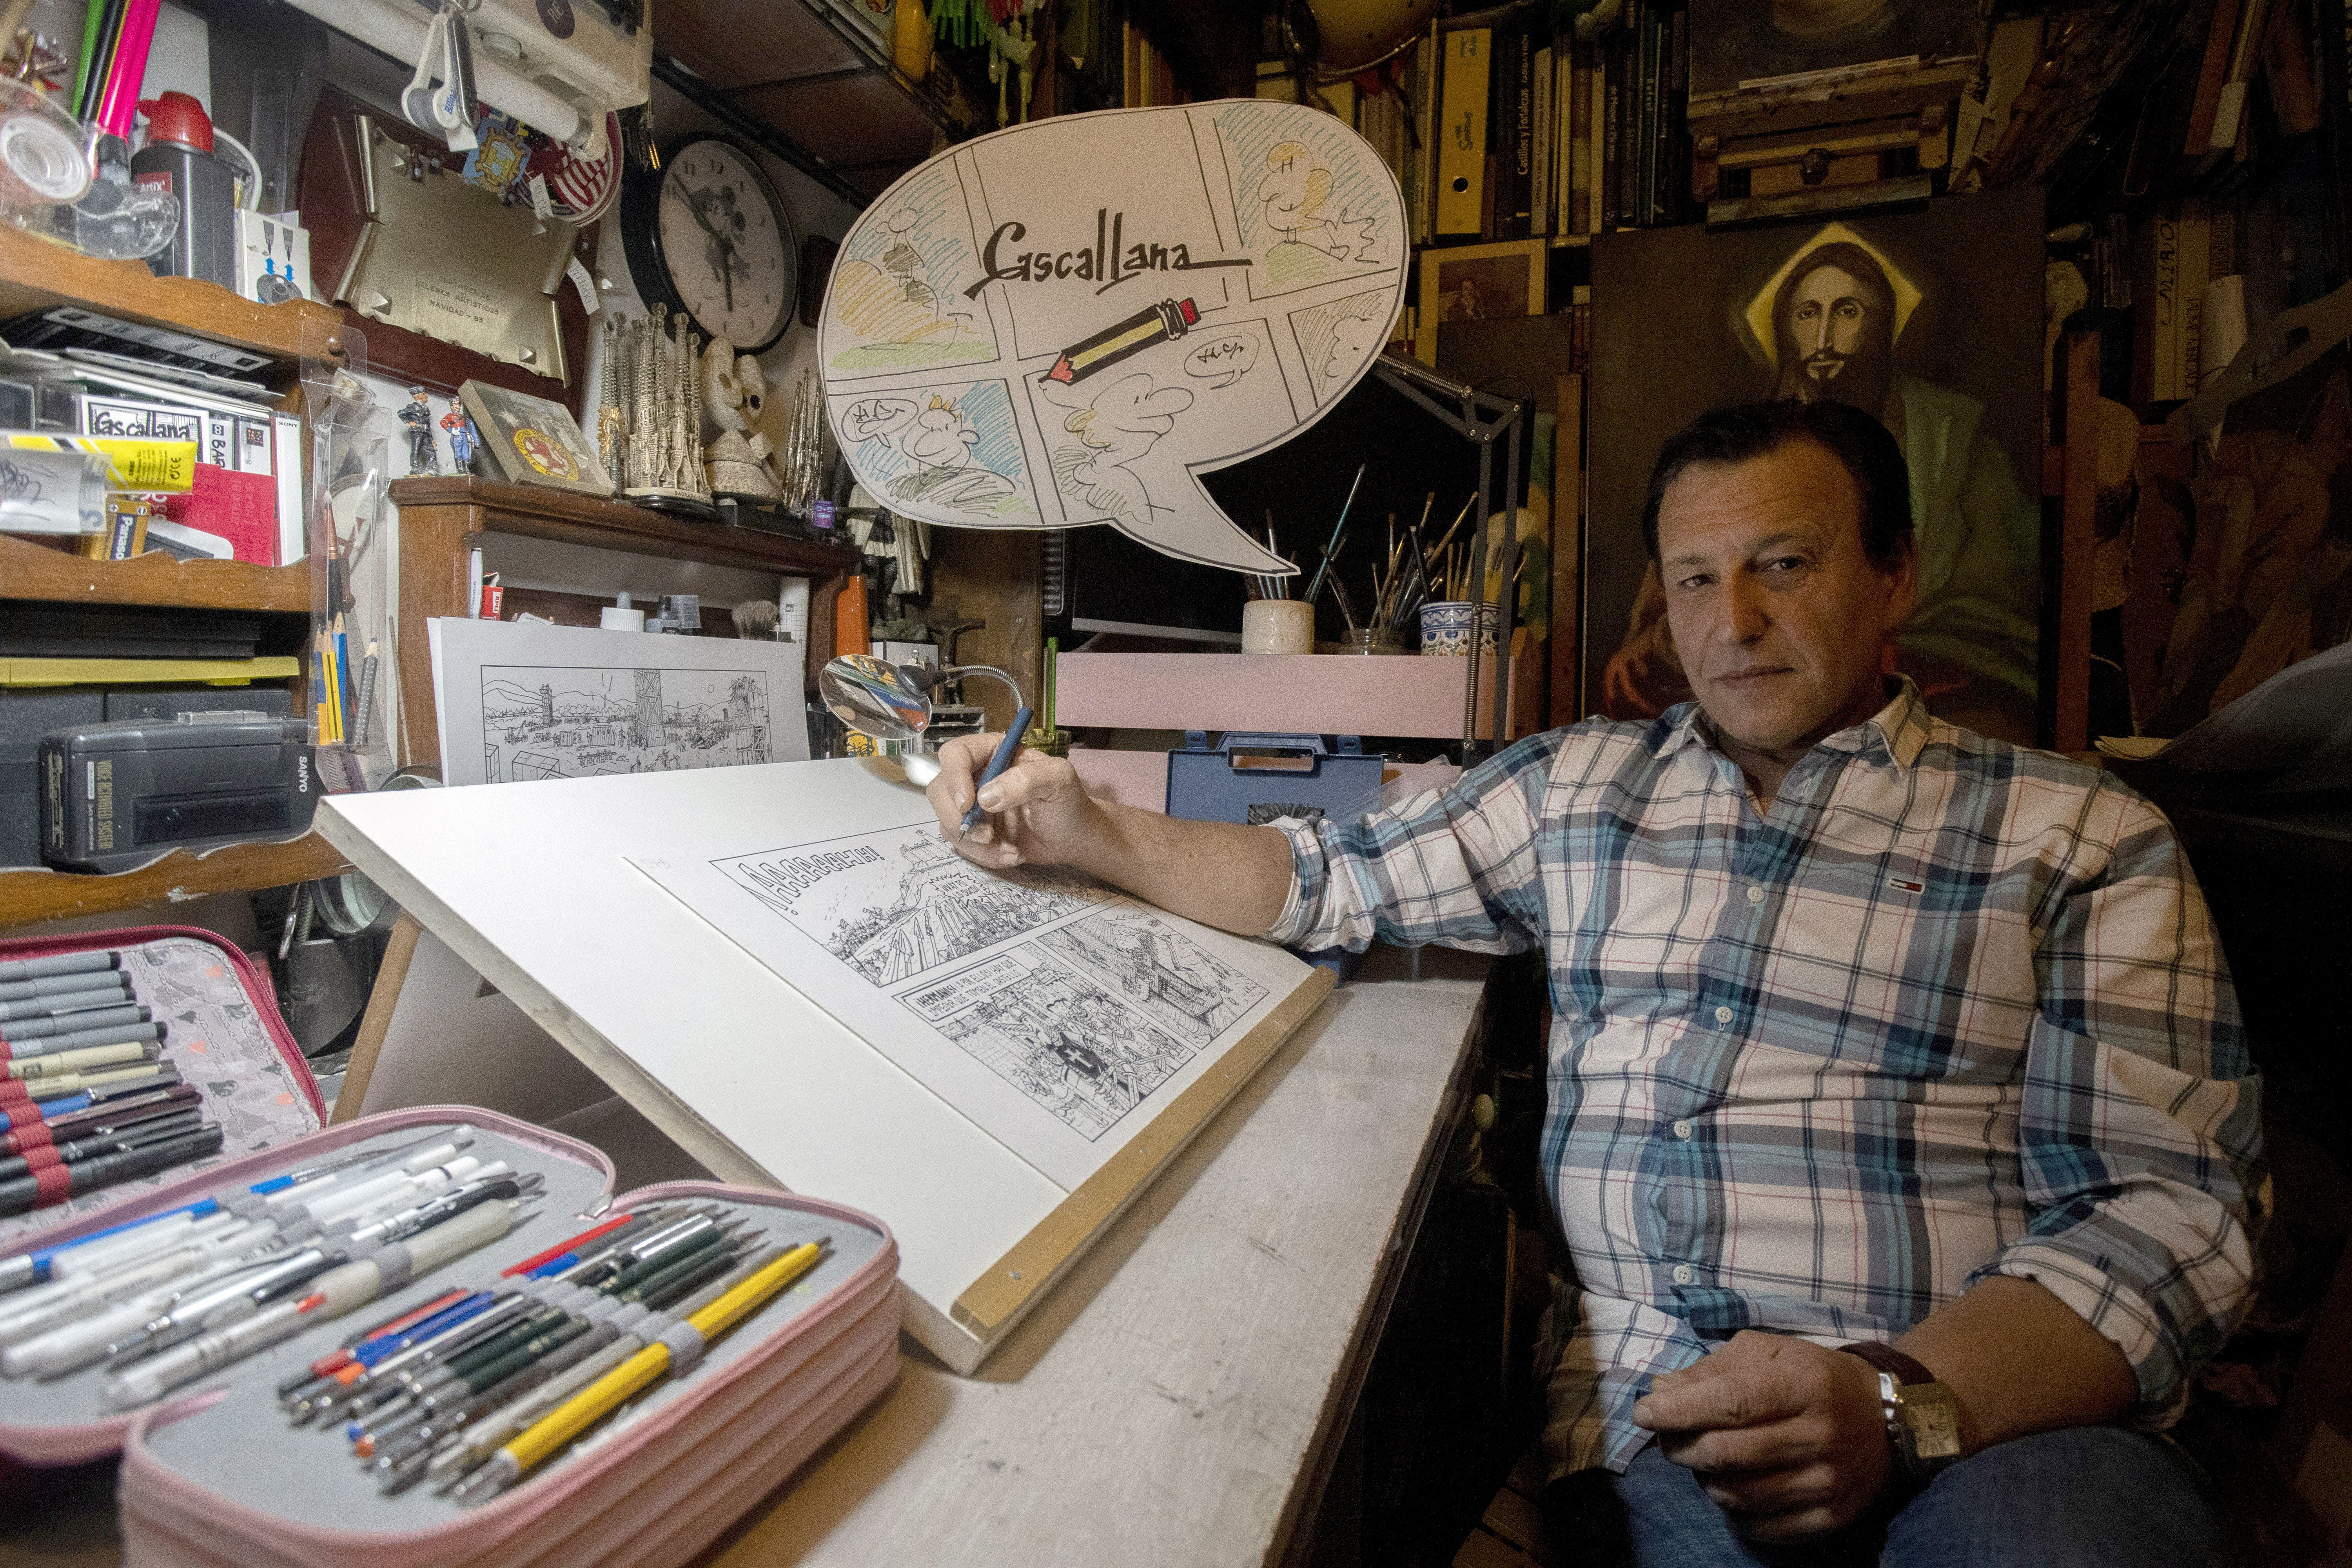 El dibujante berciano Manuel Santos Rodríguez Cascallana en su estudio. | CÉSAR SÁNCHEZ